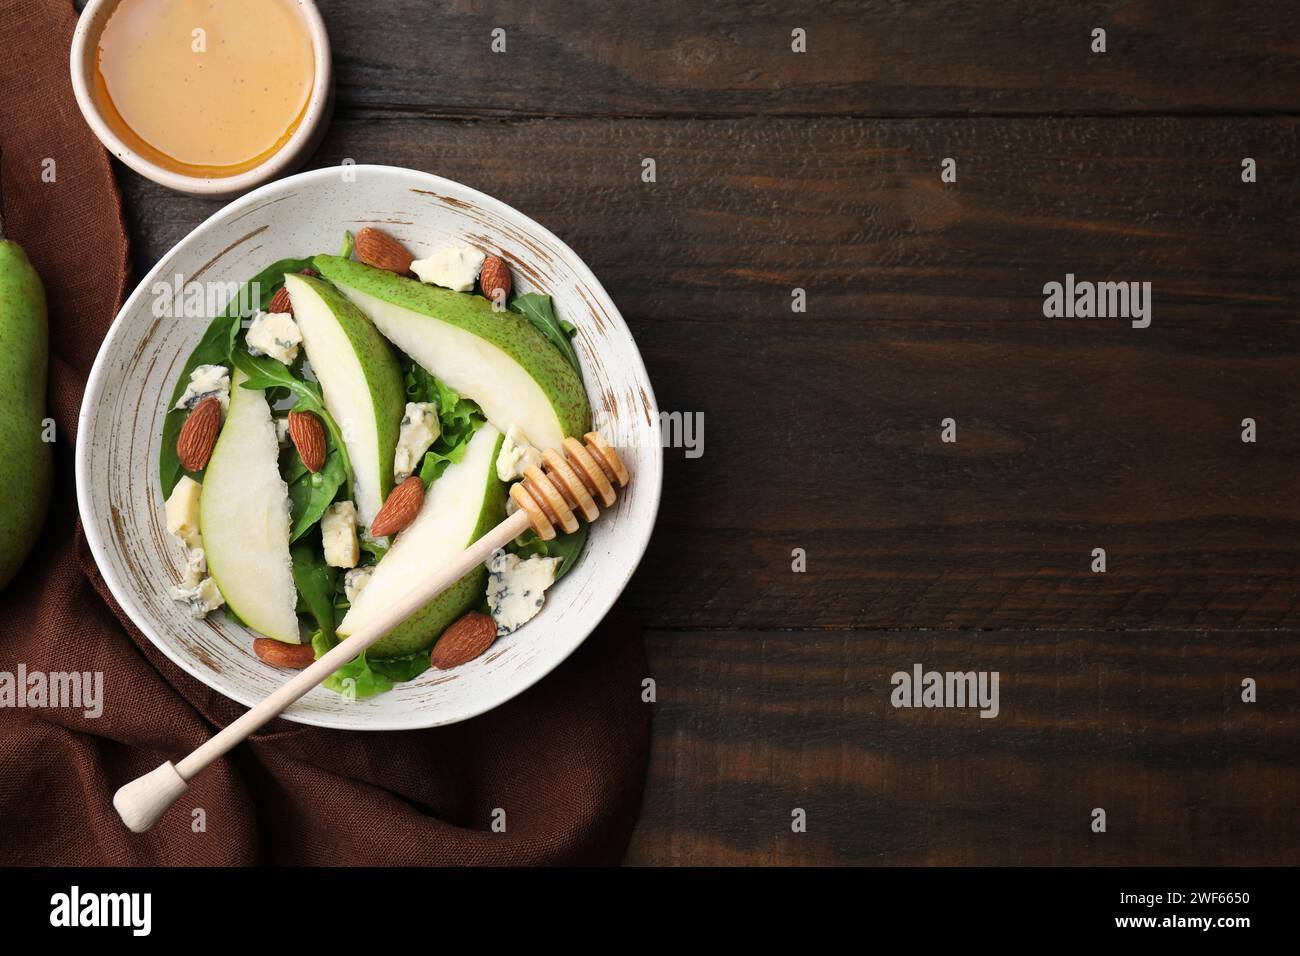 Délicieuse salade de poires dans un bol, miel et plongeur sur une table en bois, vue de dessus. Espace pour le texte Banque D'Images